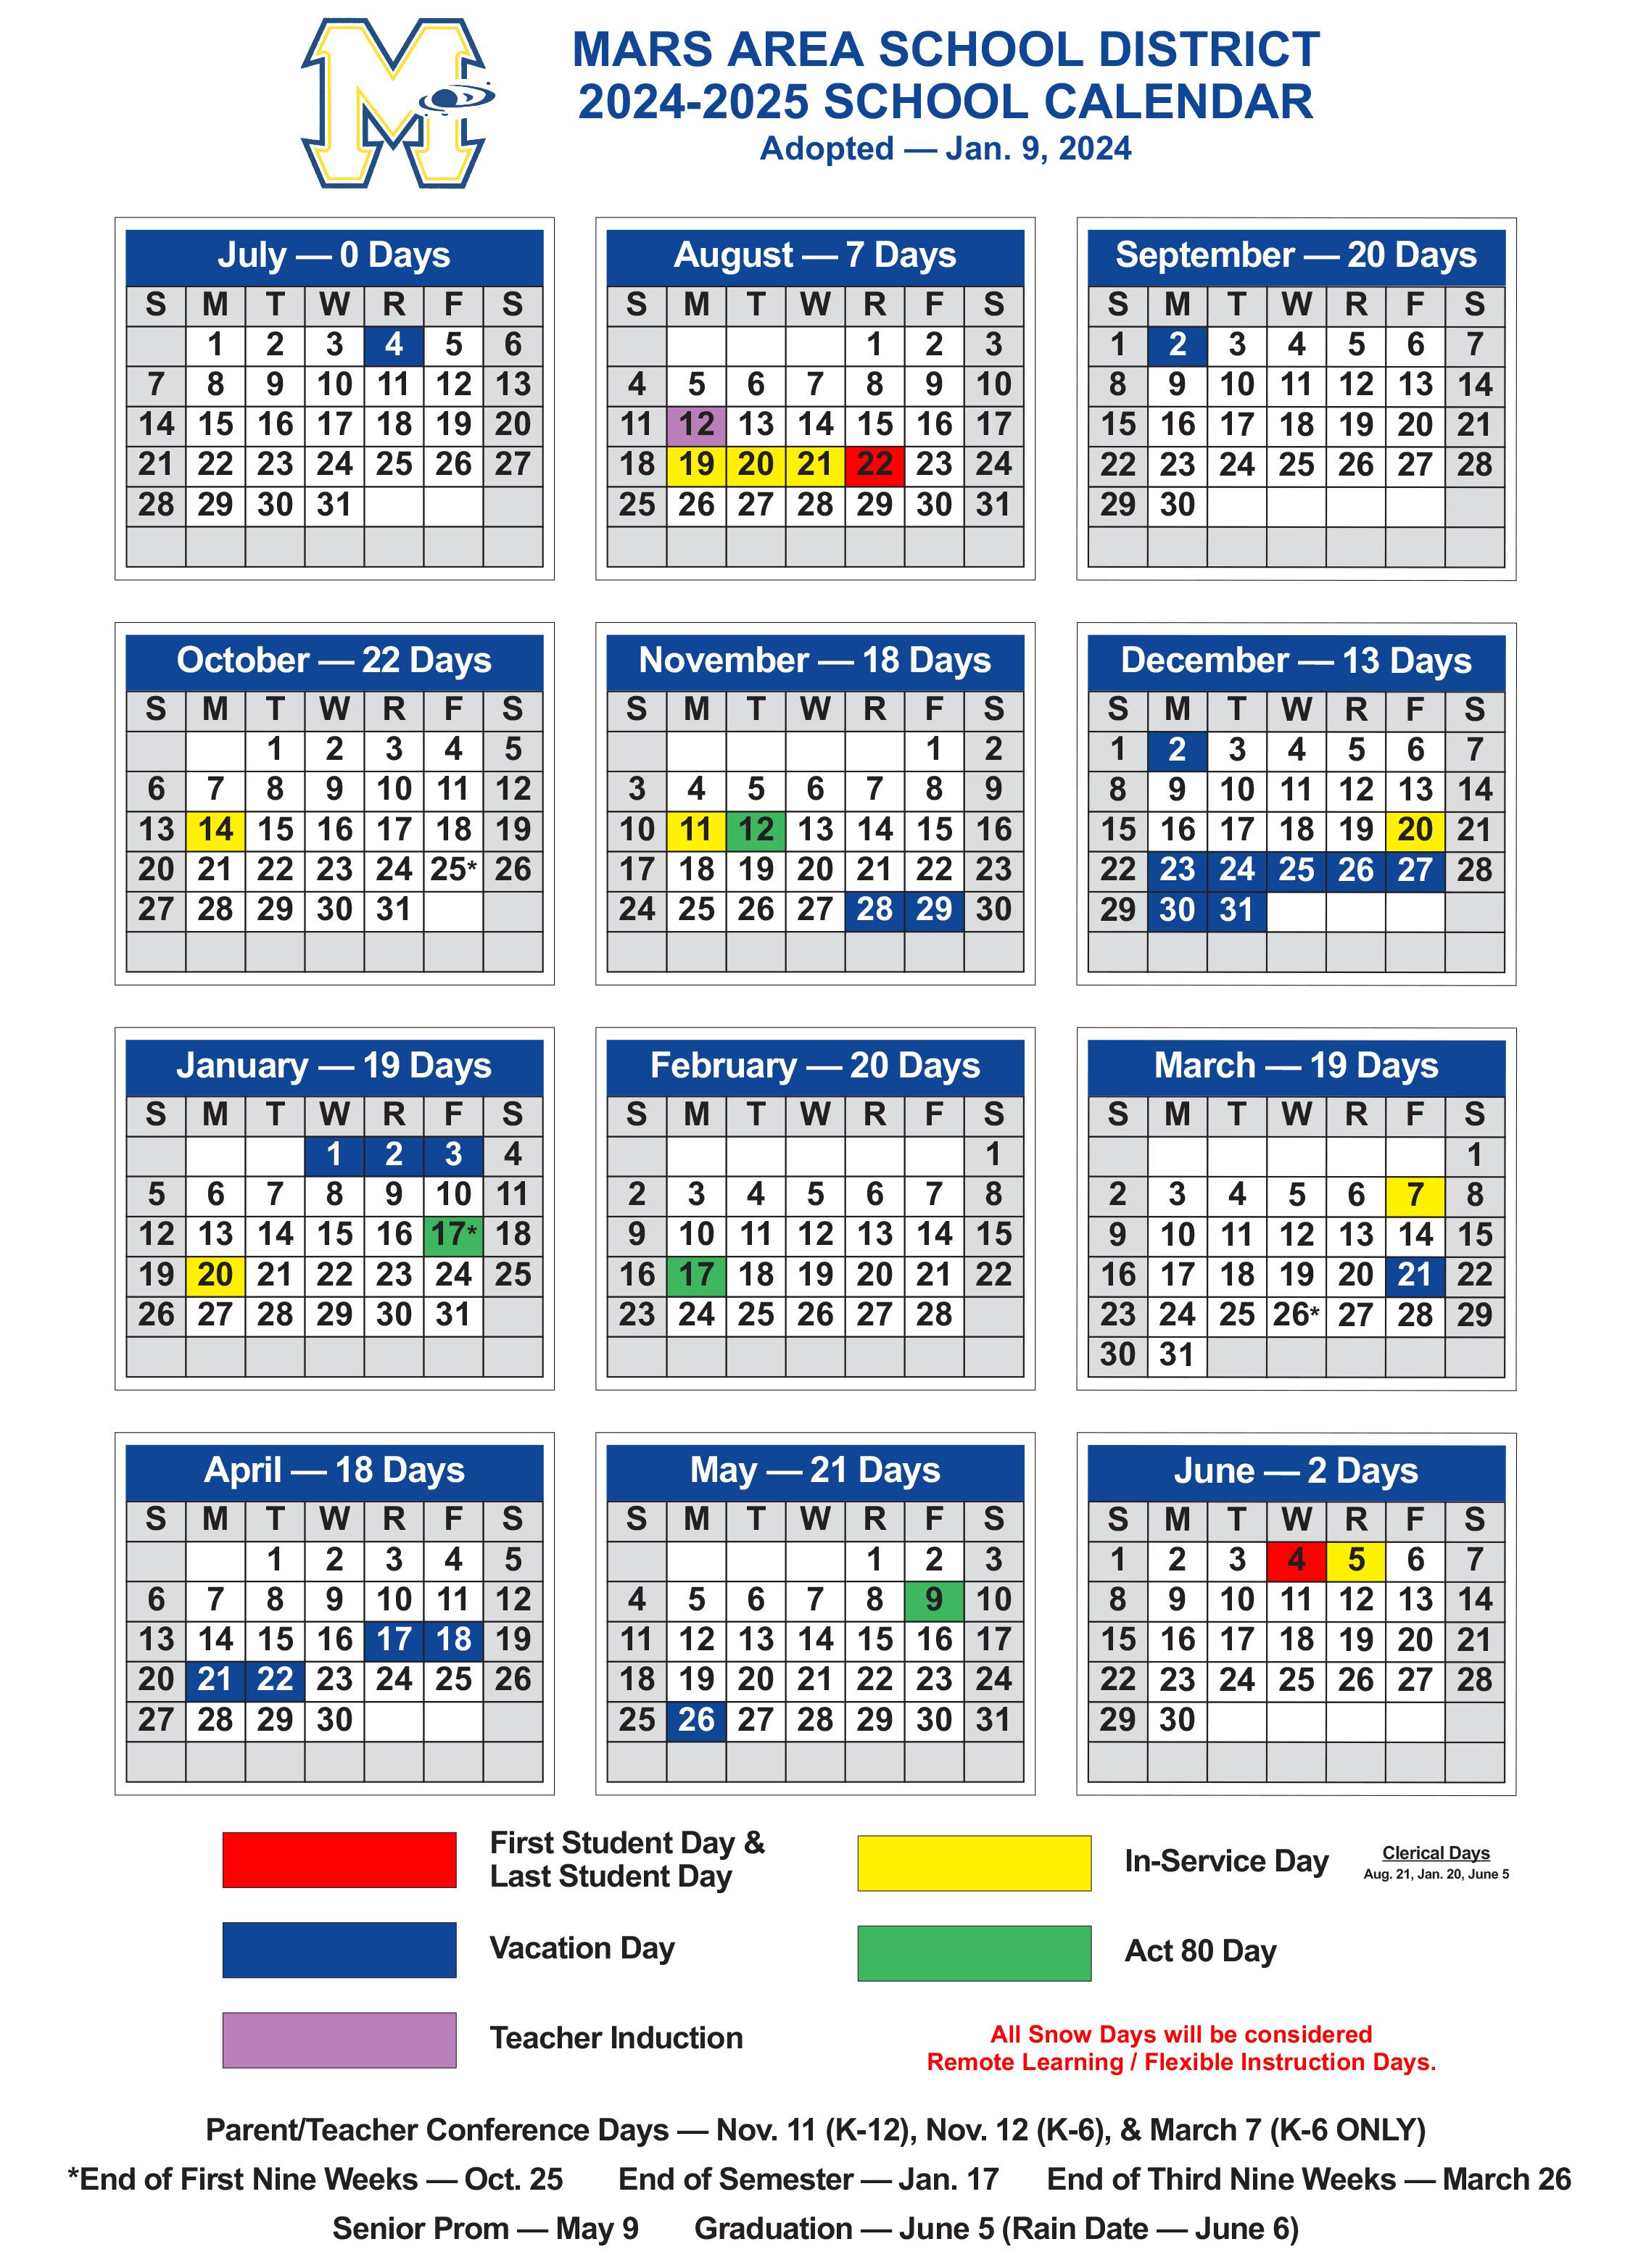 2024-2025 Mars Area School District Calendar